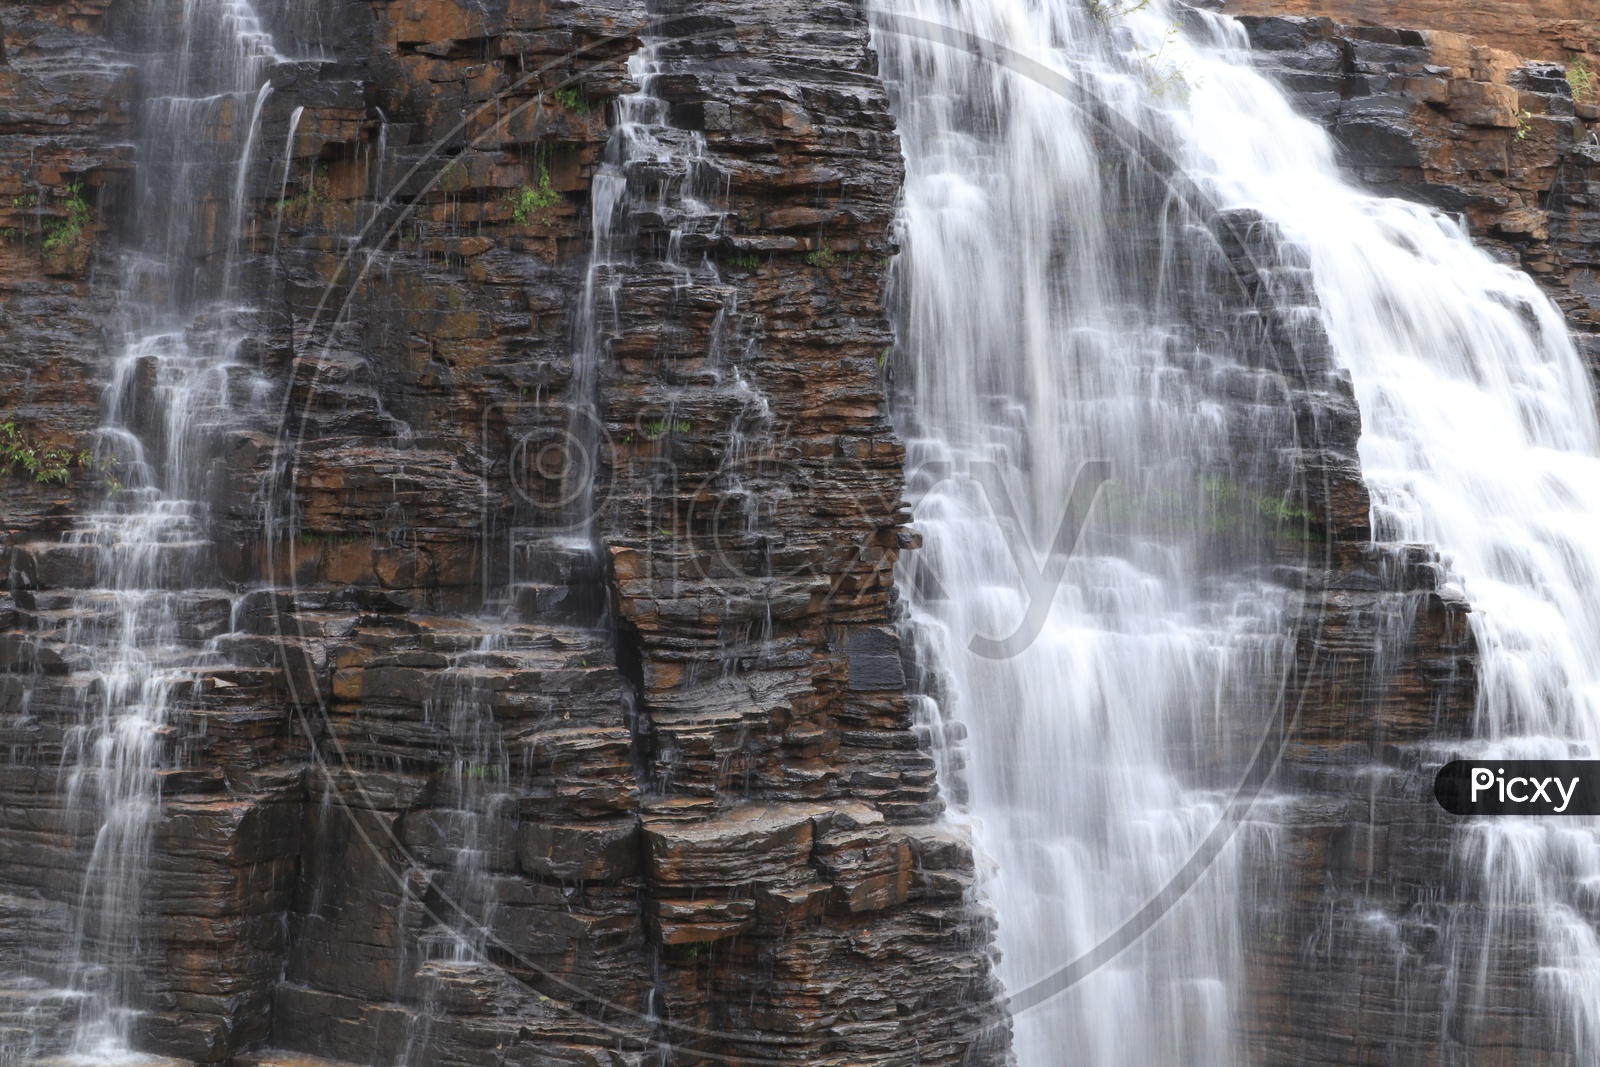 Water Falling On Rocks in a Water Falls